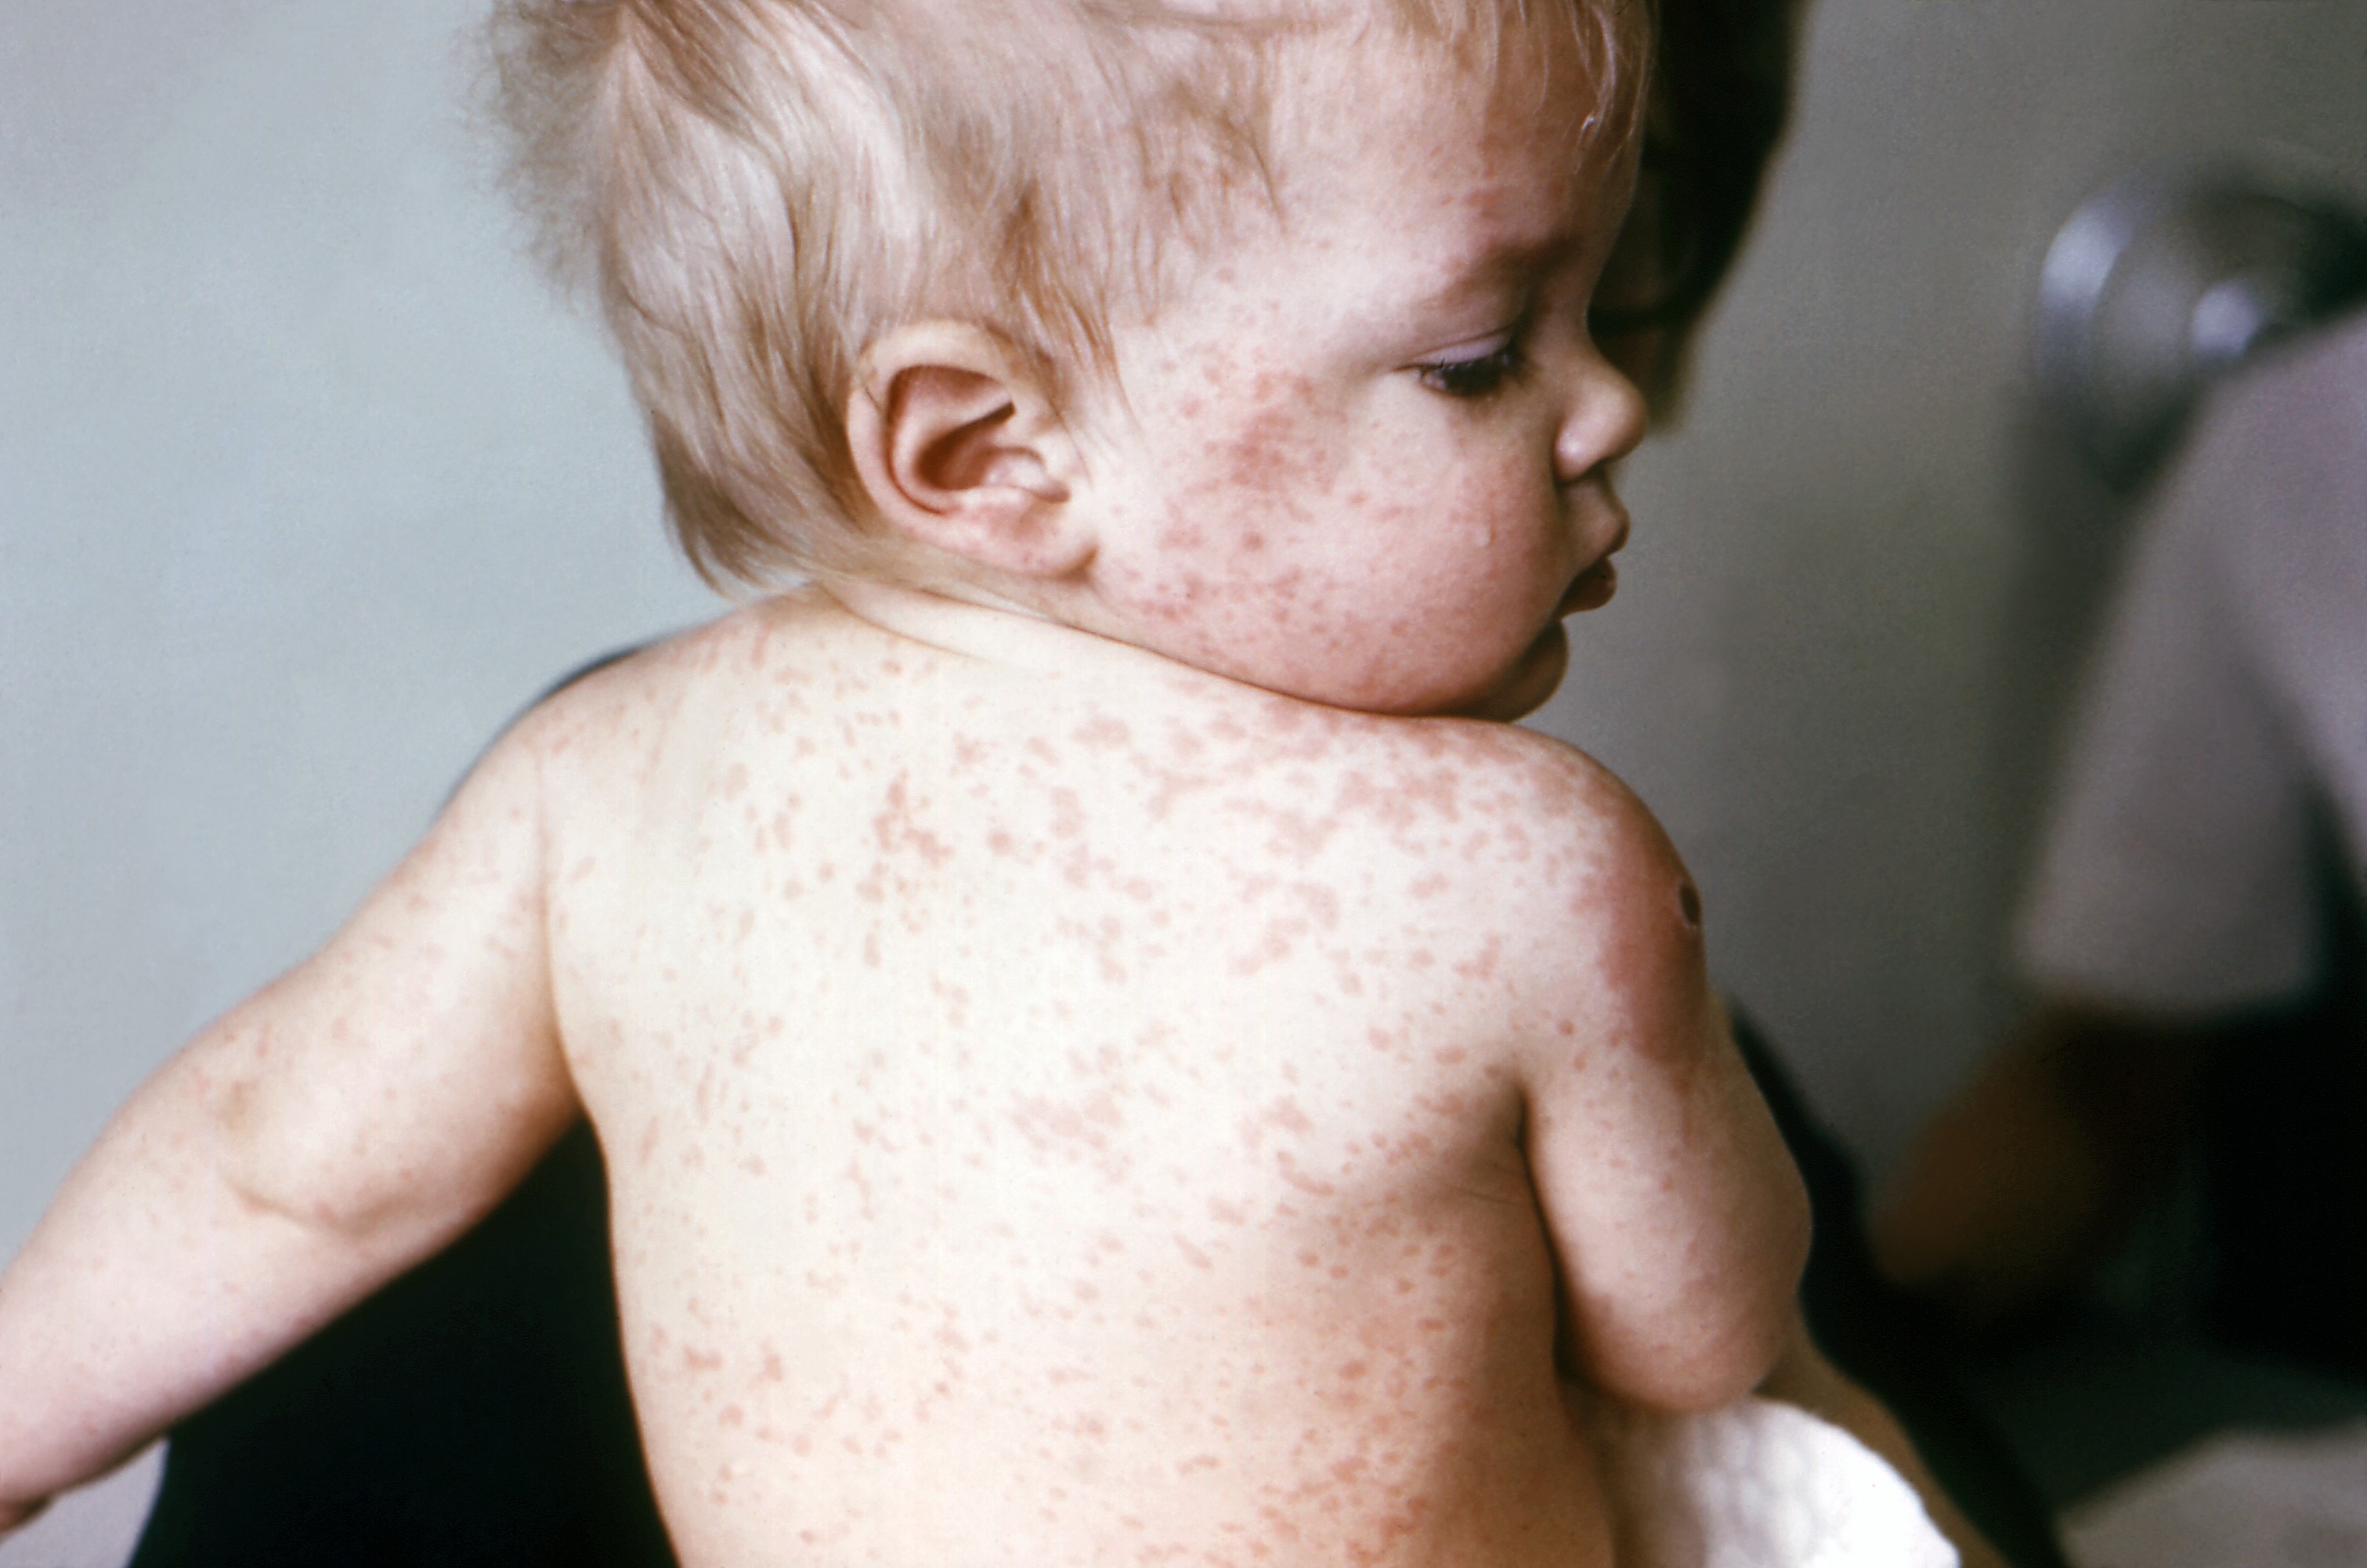 Các triệu chứng bệnh sởi ở trẻ em là sốt nhẹ hoặc sốt cao từ 39 - 400C, sốt liên tục